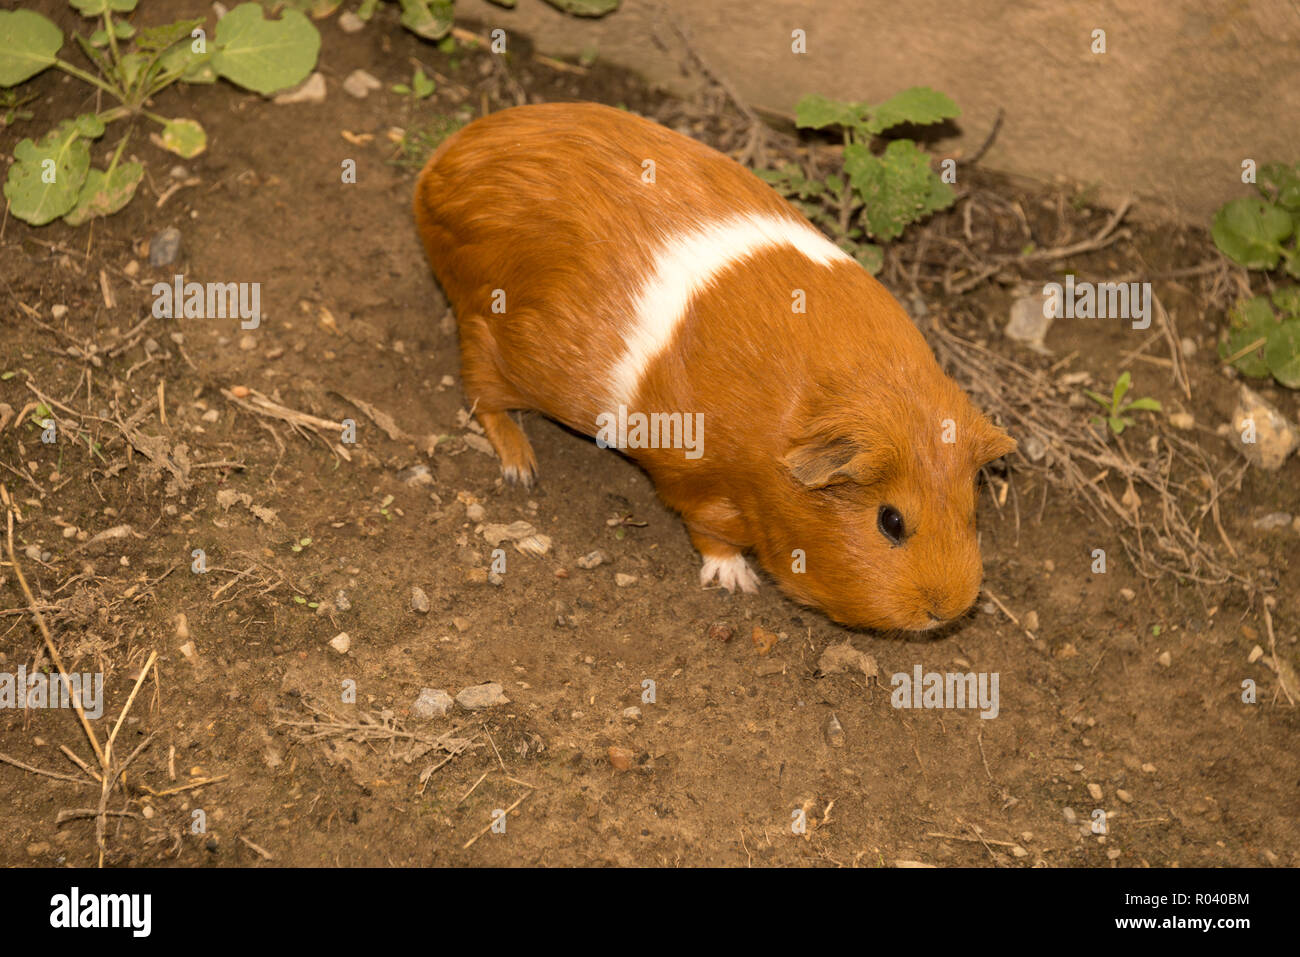 Guinea pig (Cavia porcellus) Stock Photo